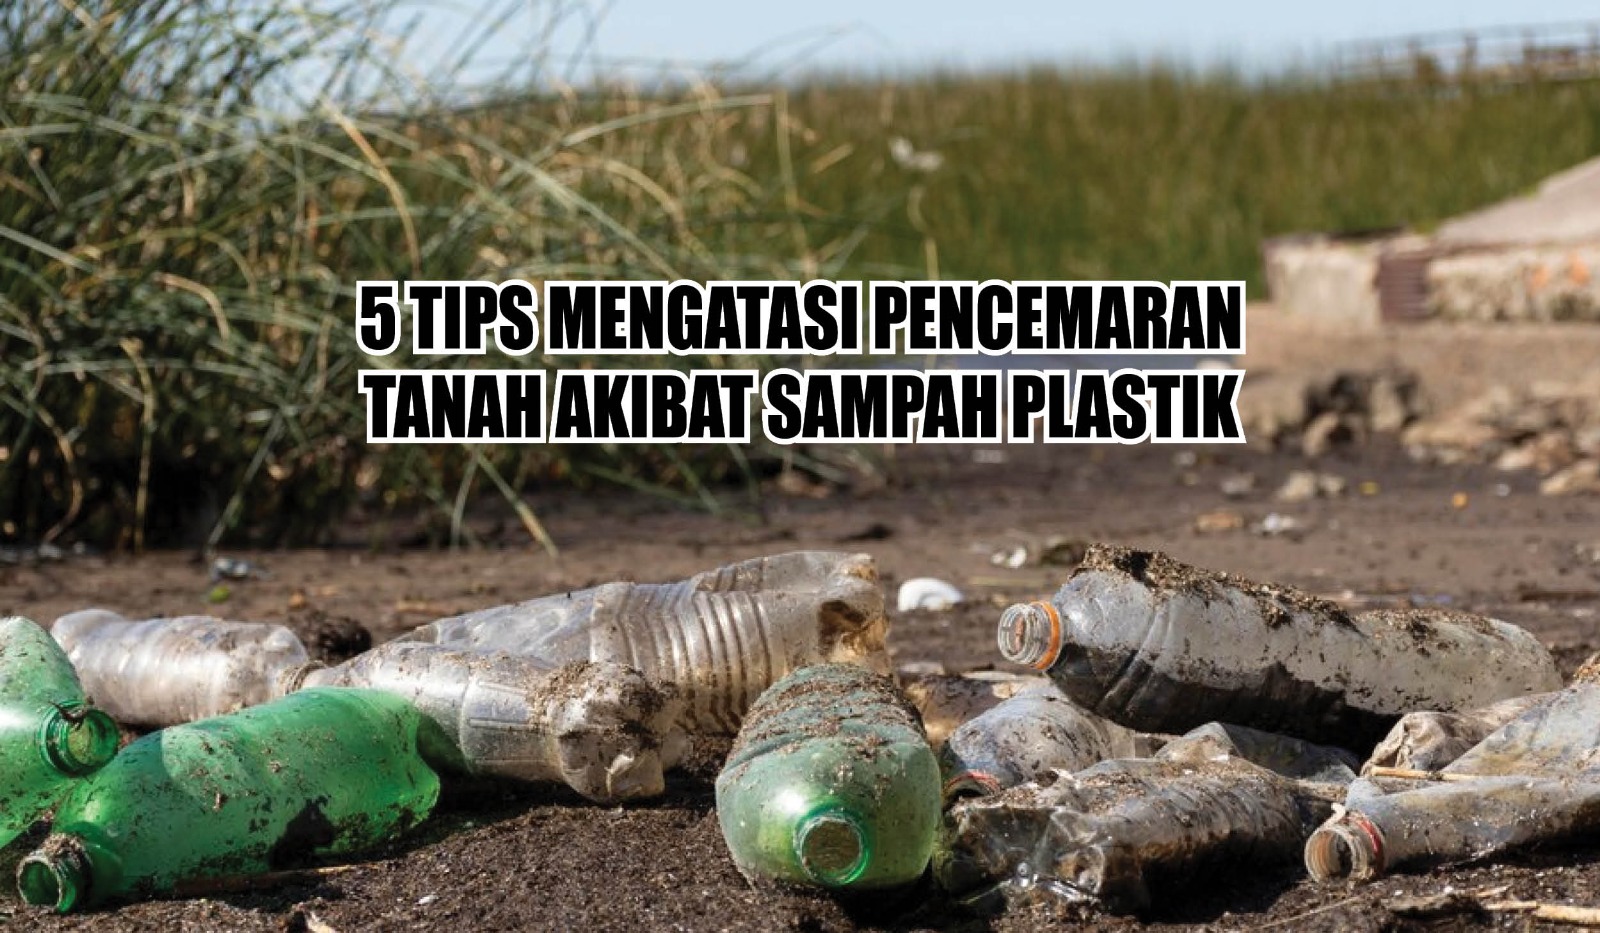 Buat Lingkungan Jadi Lebih Bersih! Ini 5 Tips Mengatasi Pencemaran Tanah Akibat Sampah Plastik